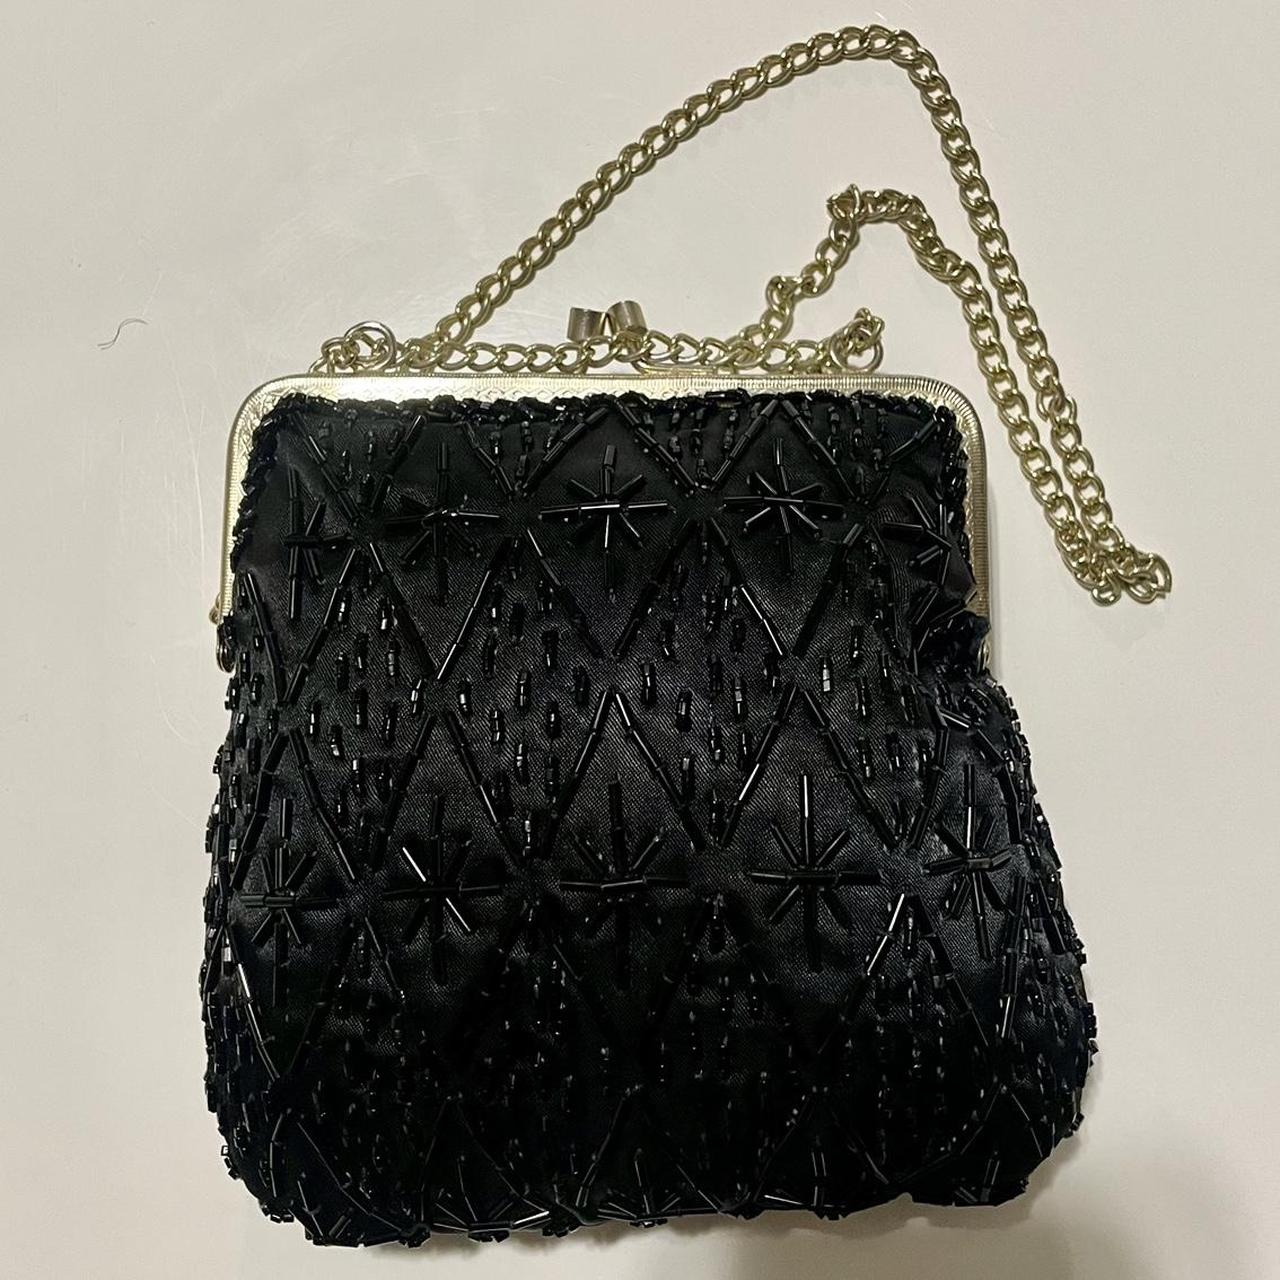 Vintage Black Satin Beaded Evening Bag Clutch 